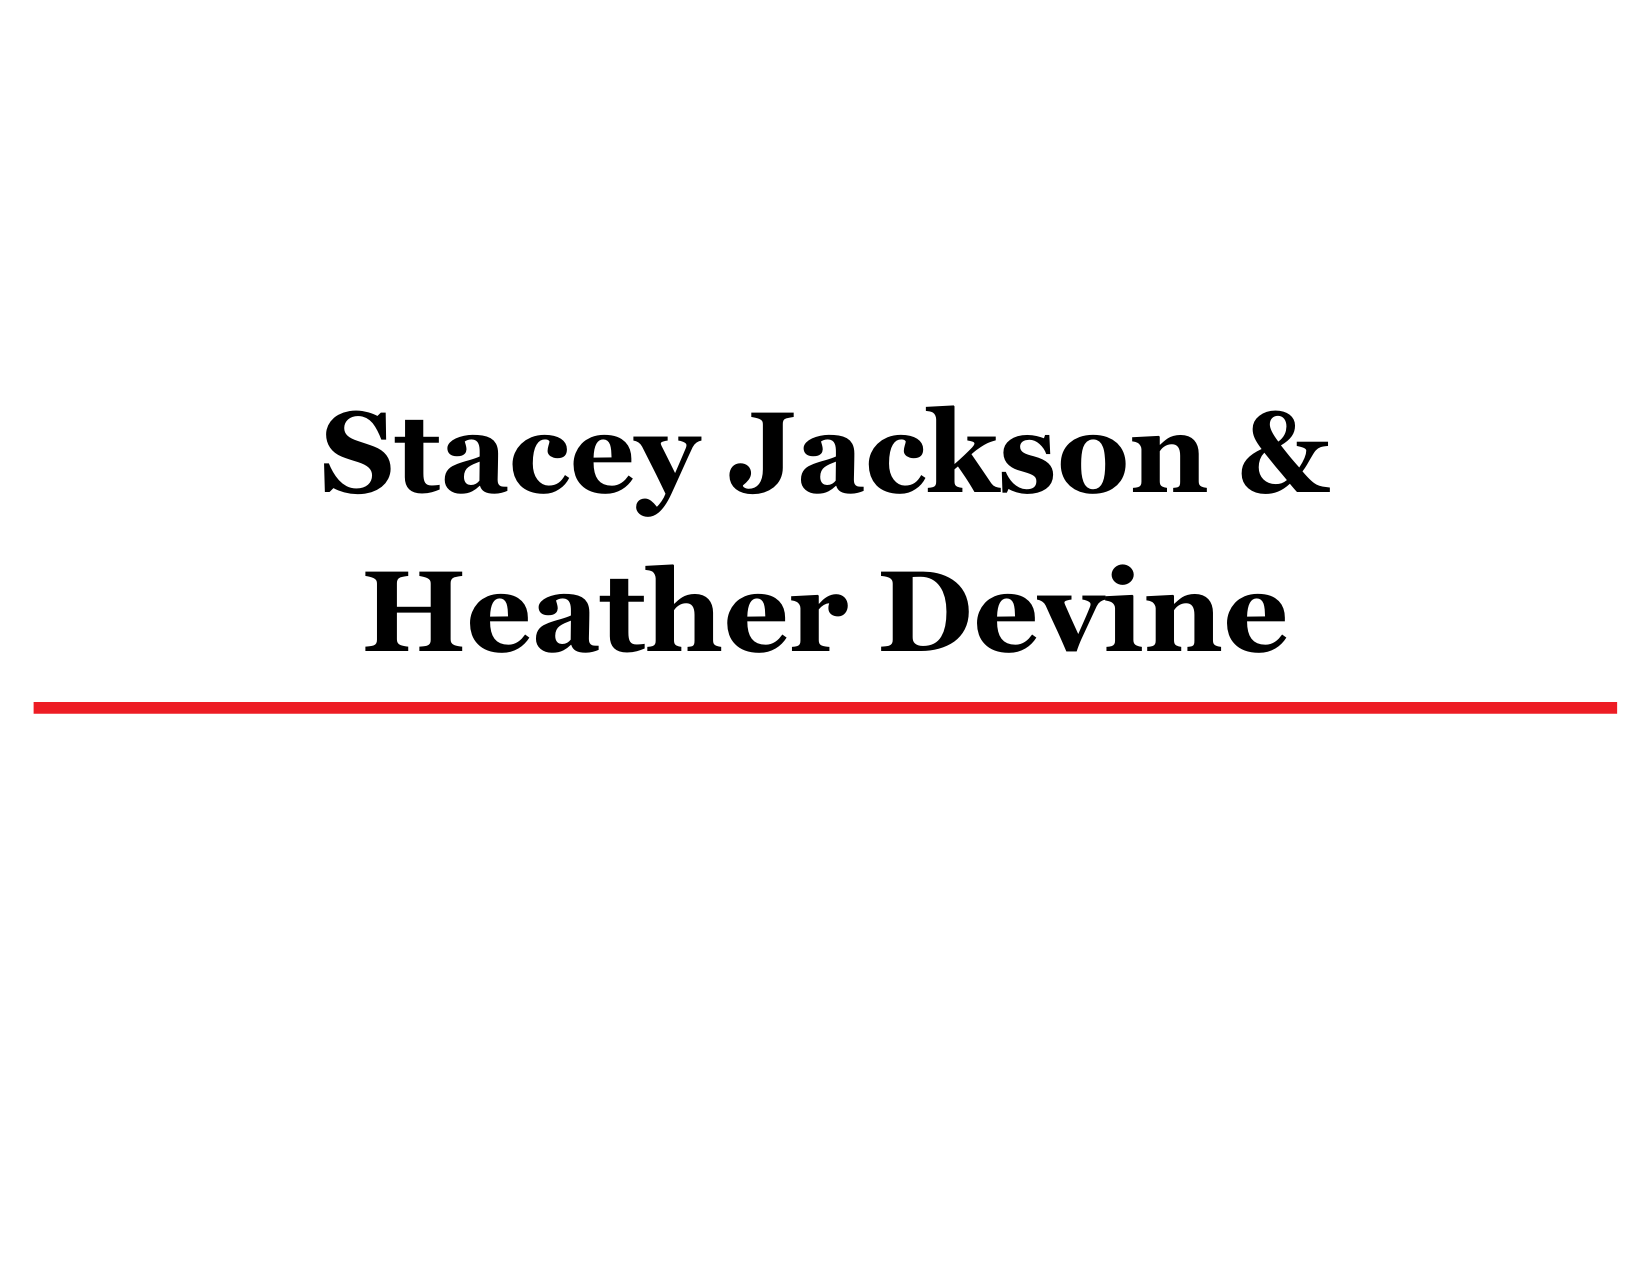 Stacey Jackson & Heather Devine